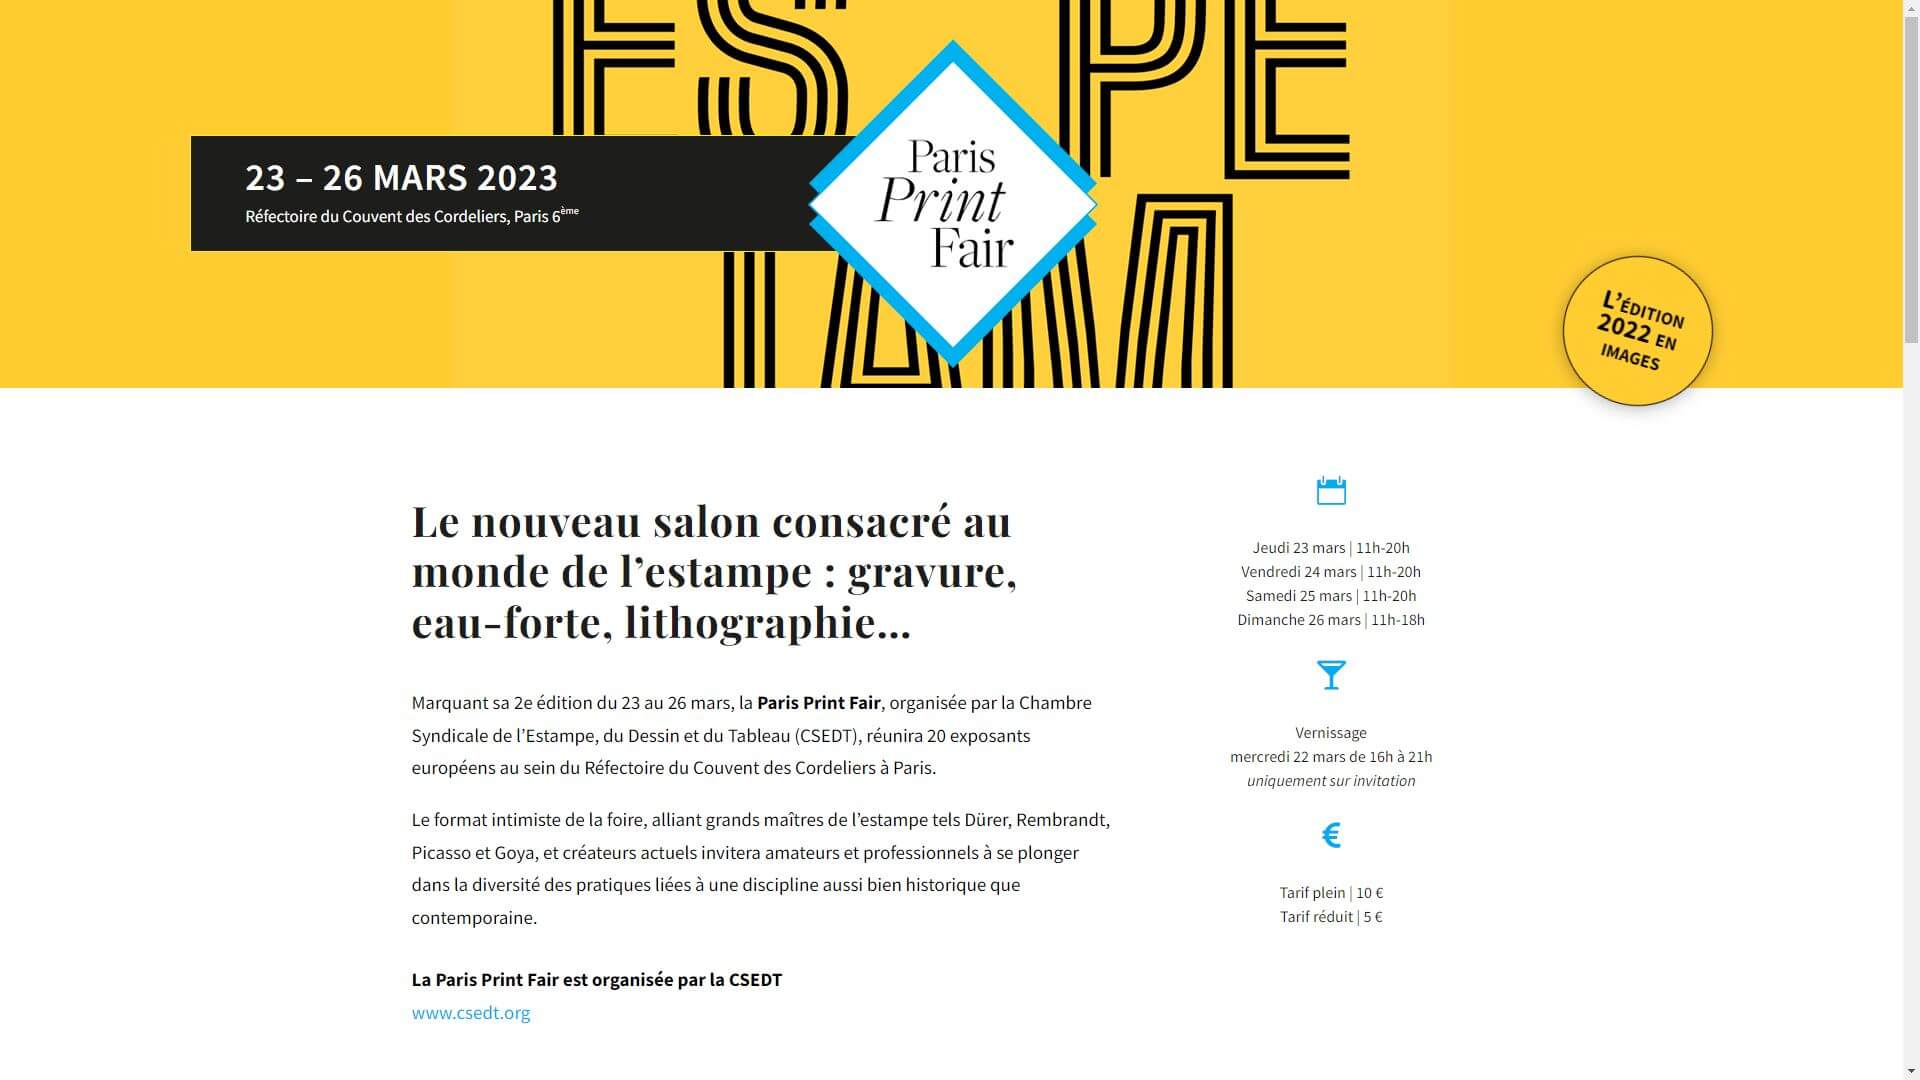 Paris Print Fair | Salon de l'estampe